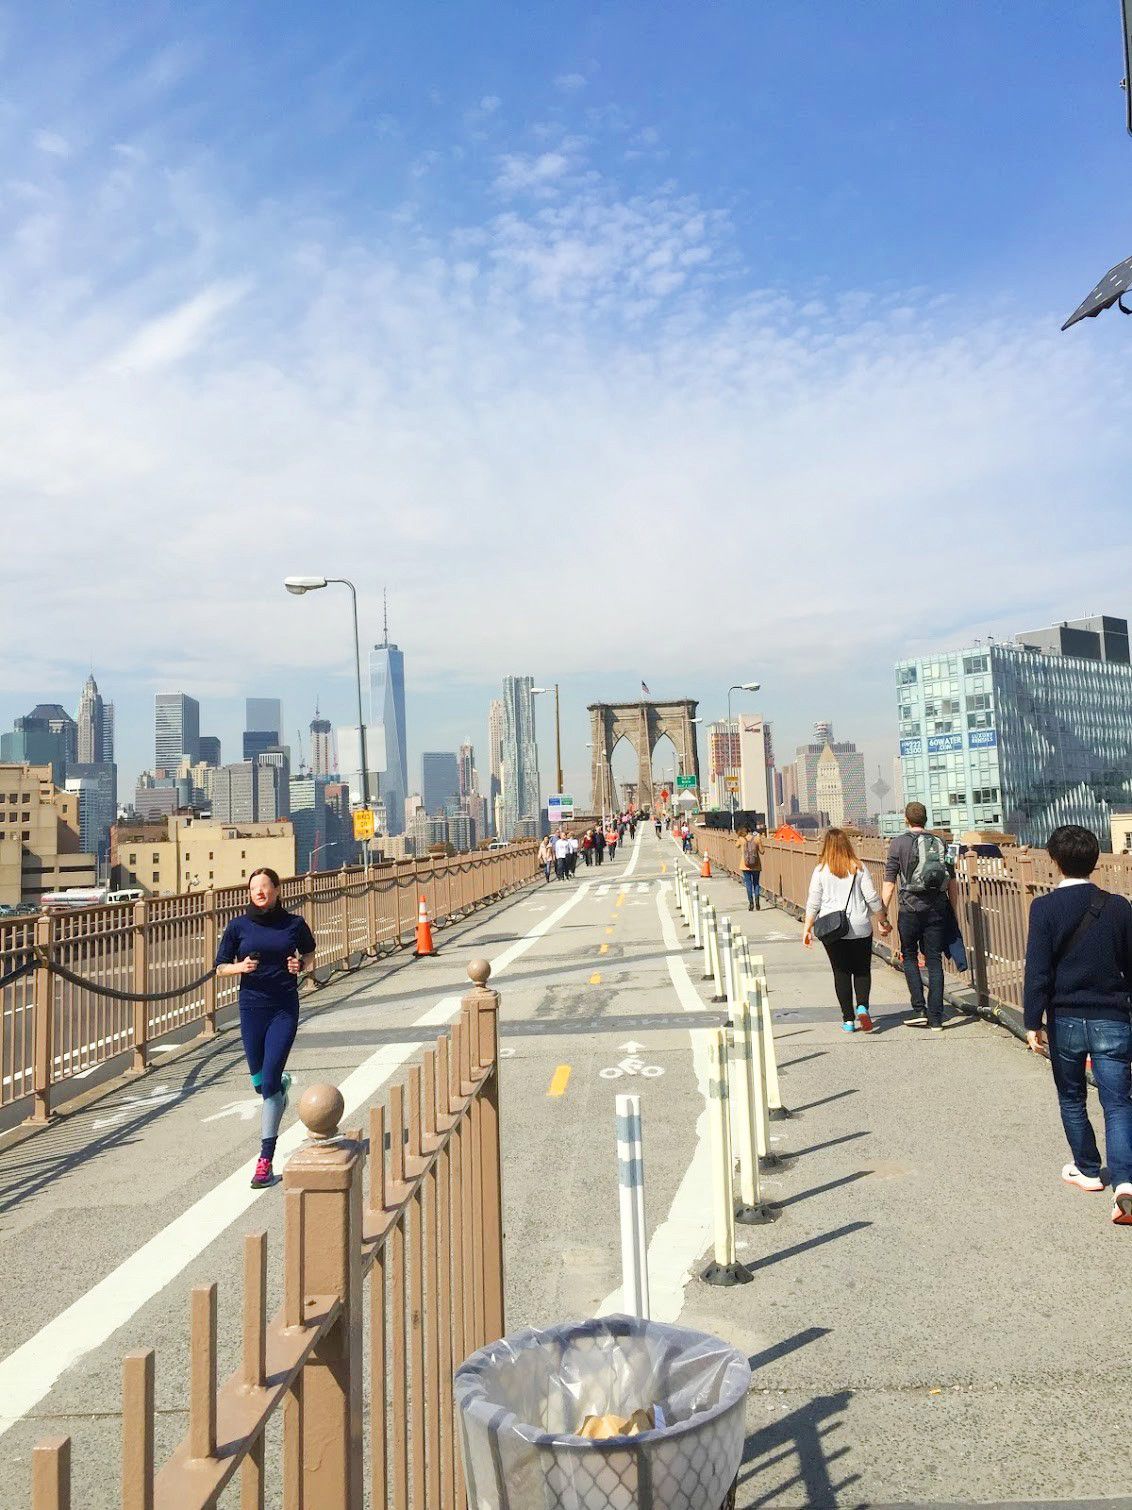 ニューヨークの美しさに驚き！映画シーン常連のブルックリン橋を渡ろう